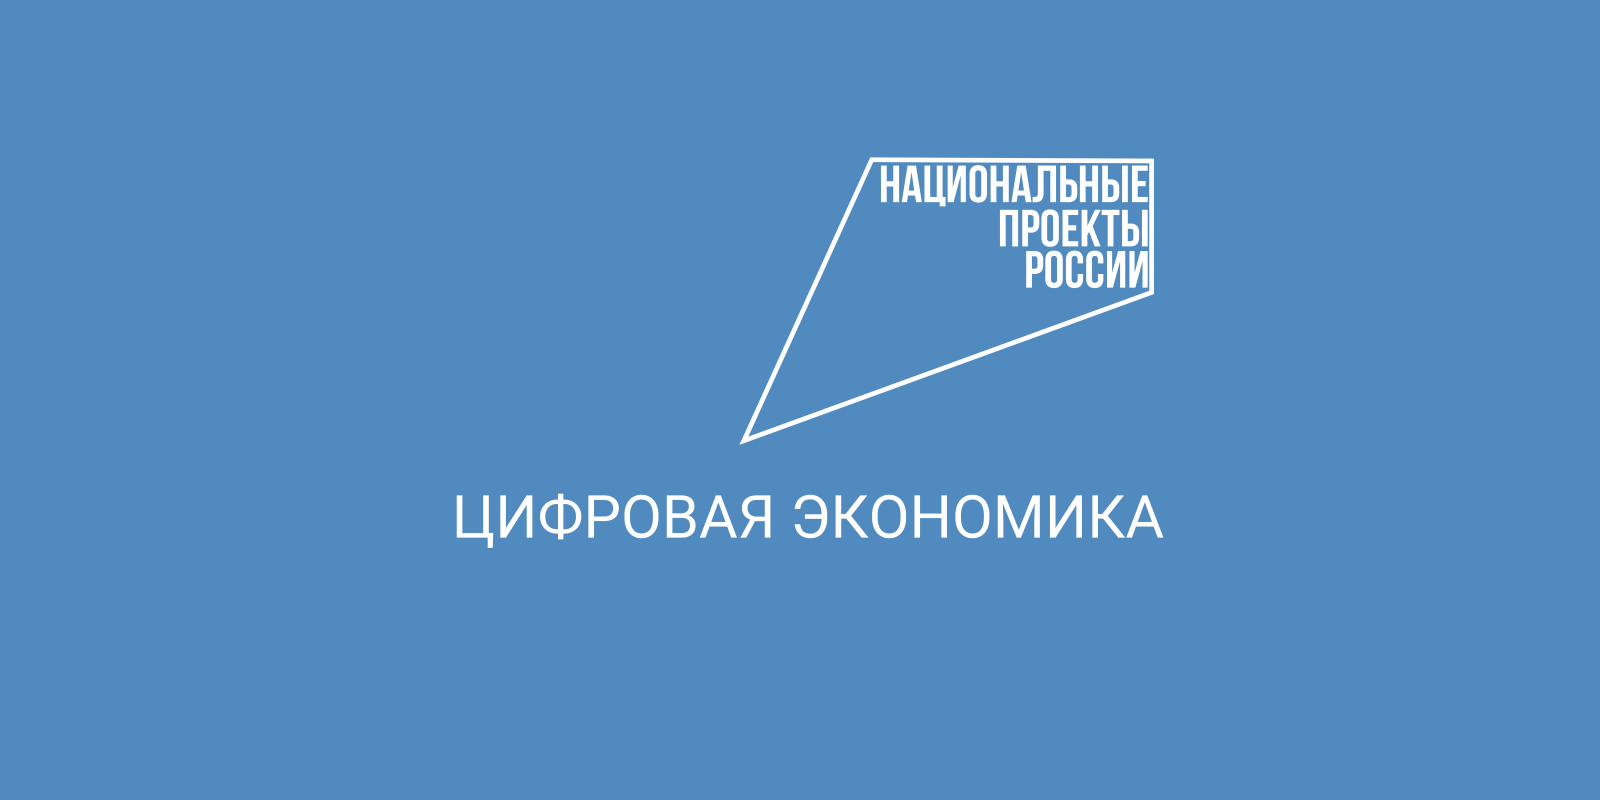 Многофункциональные центры Вологодской области признаны высокодоступными.